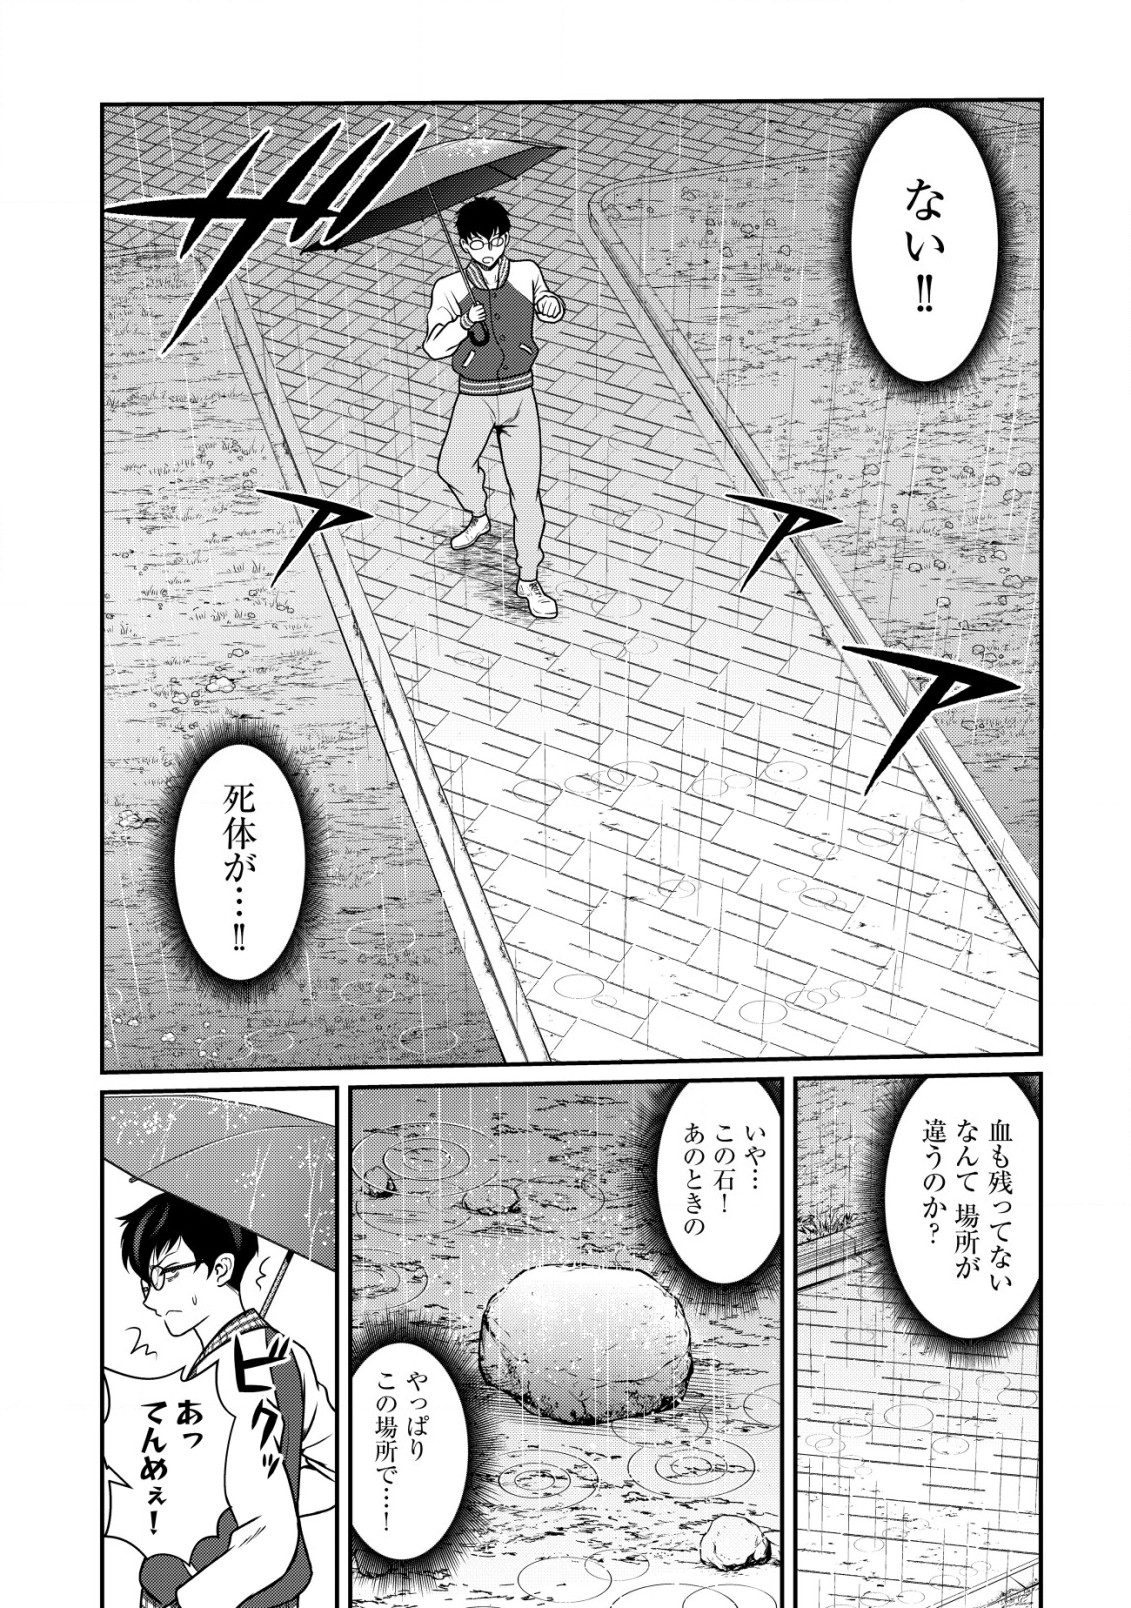 Leveling Murder – Shuu ni Ichido Hito wo Korosanai to Jibun ga Shinde Shimau no de, Sore Nara Isso Kanzenchoaku Shiyou to Omoimasu - Chapter 1.2 - Page 2